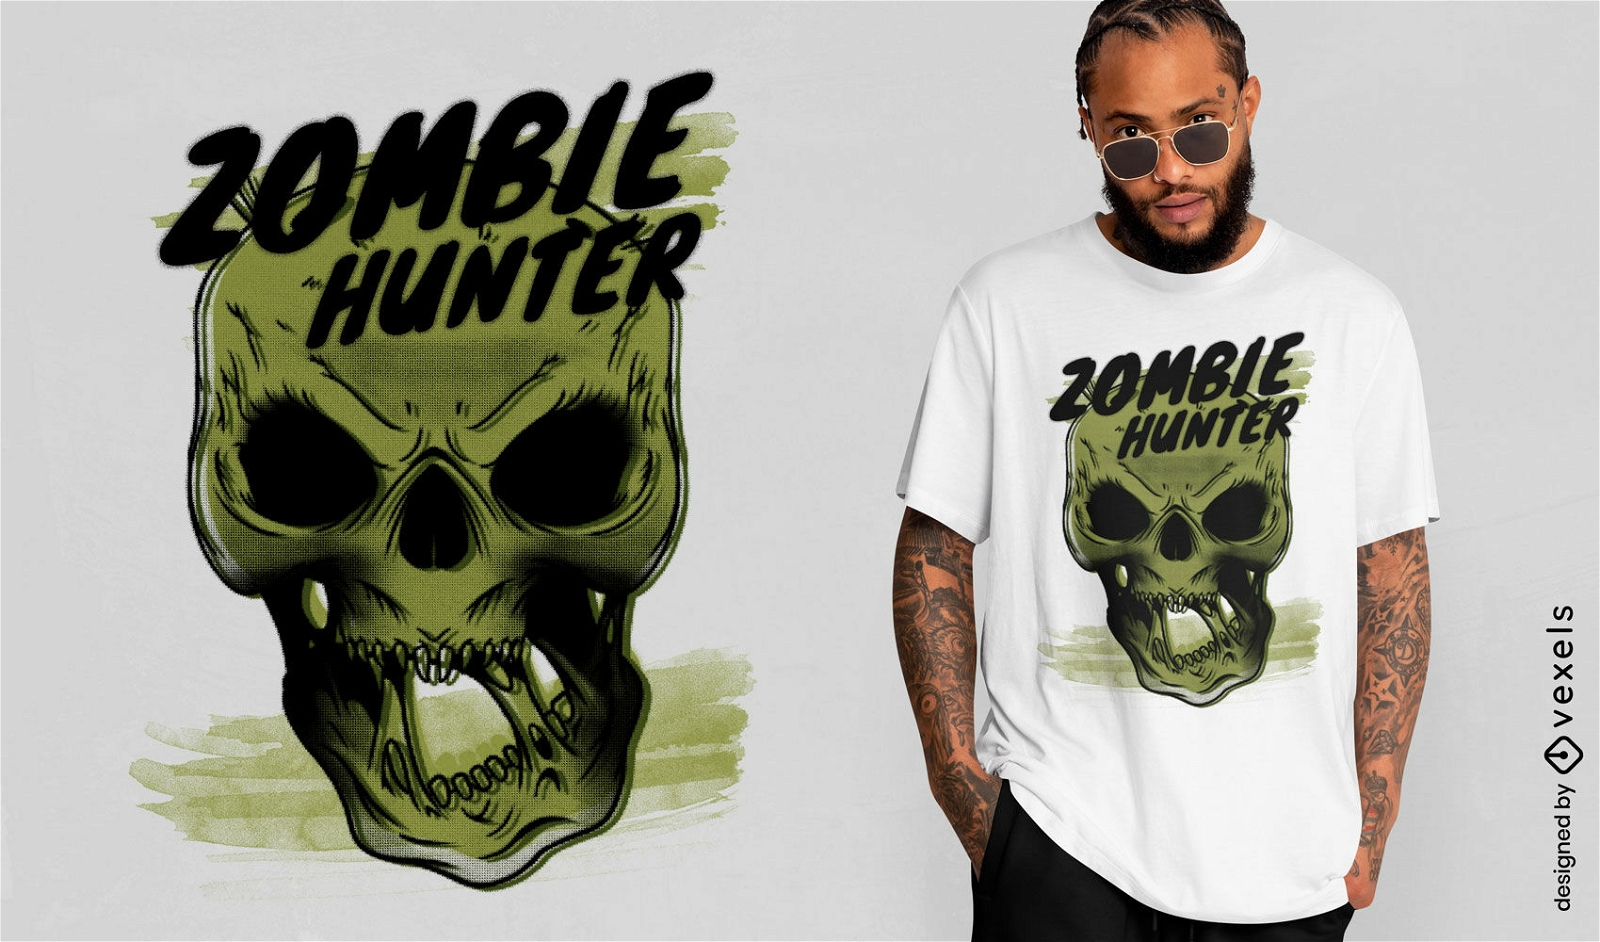 Skeleton monster halloween cartoon t-shirt psd